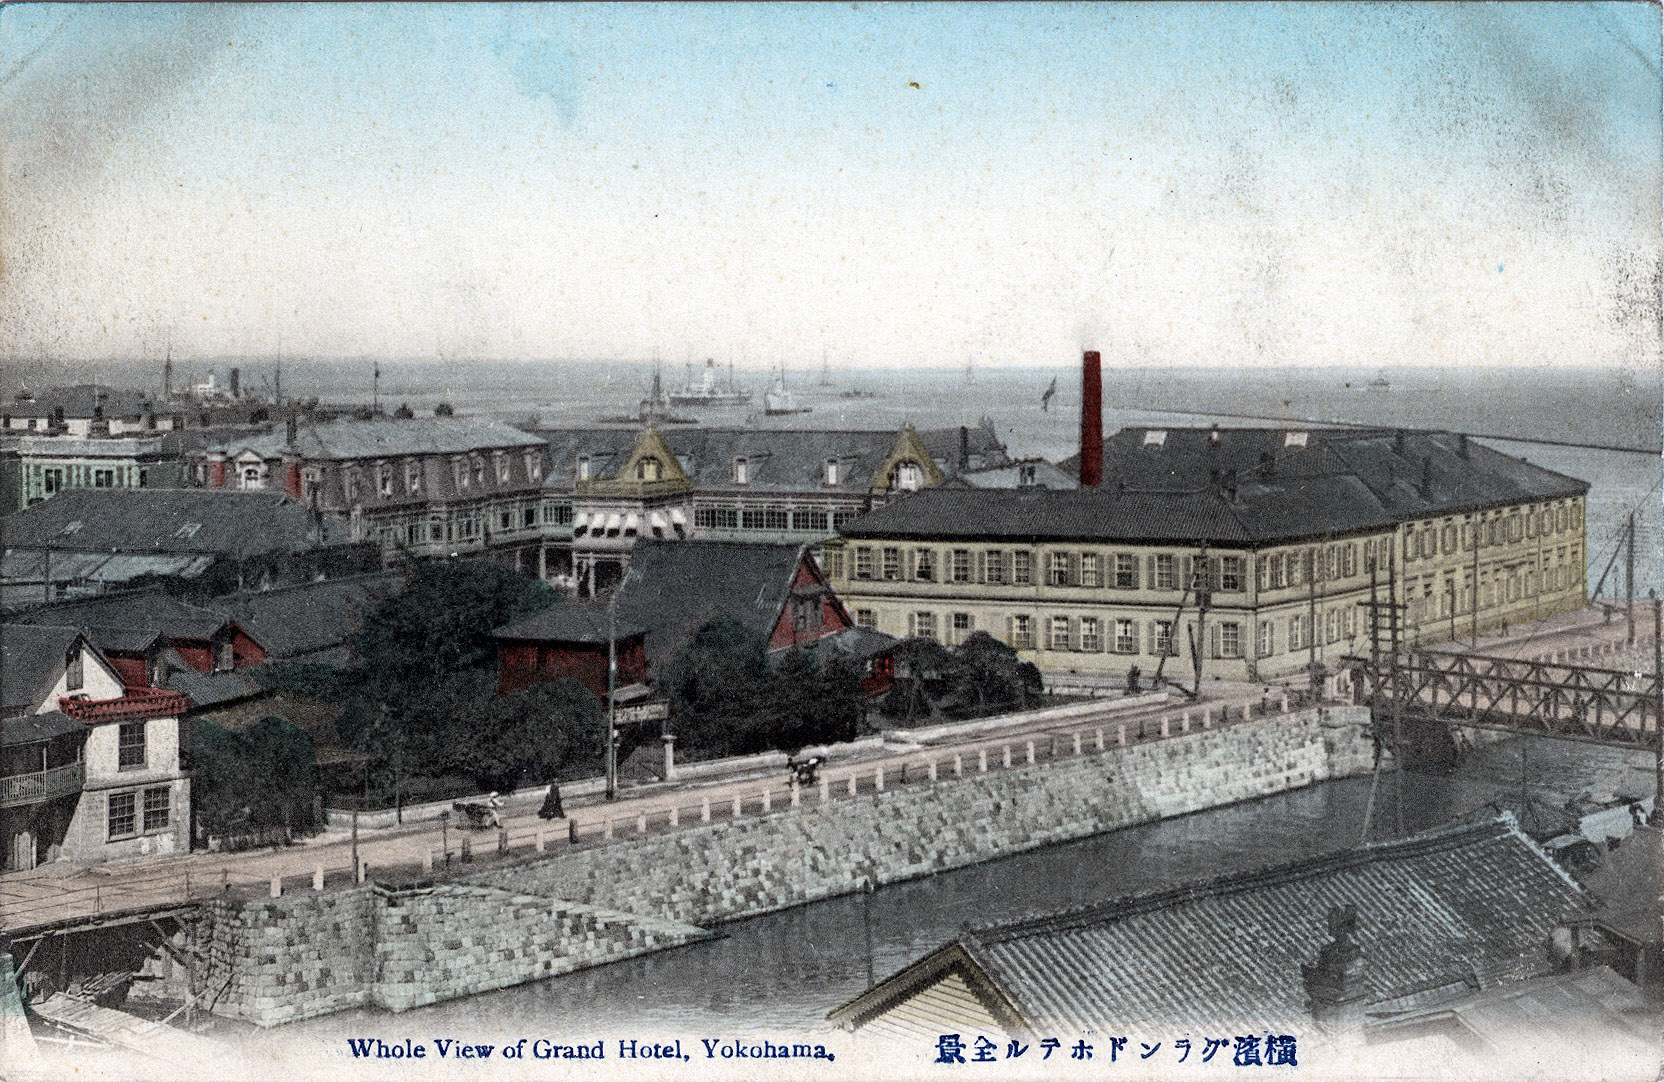 French Consulate, Yokohama, c. 1910.